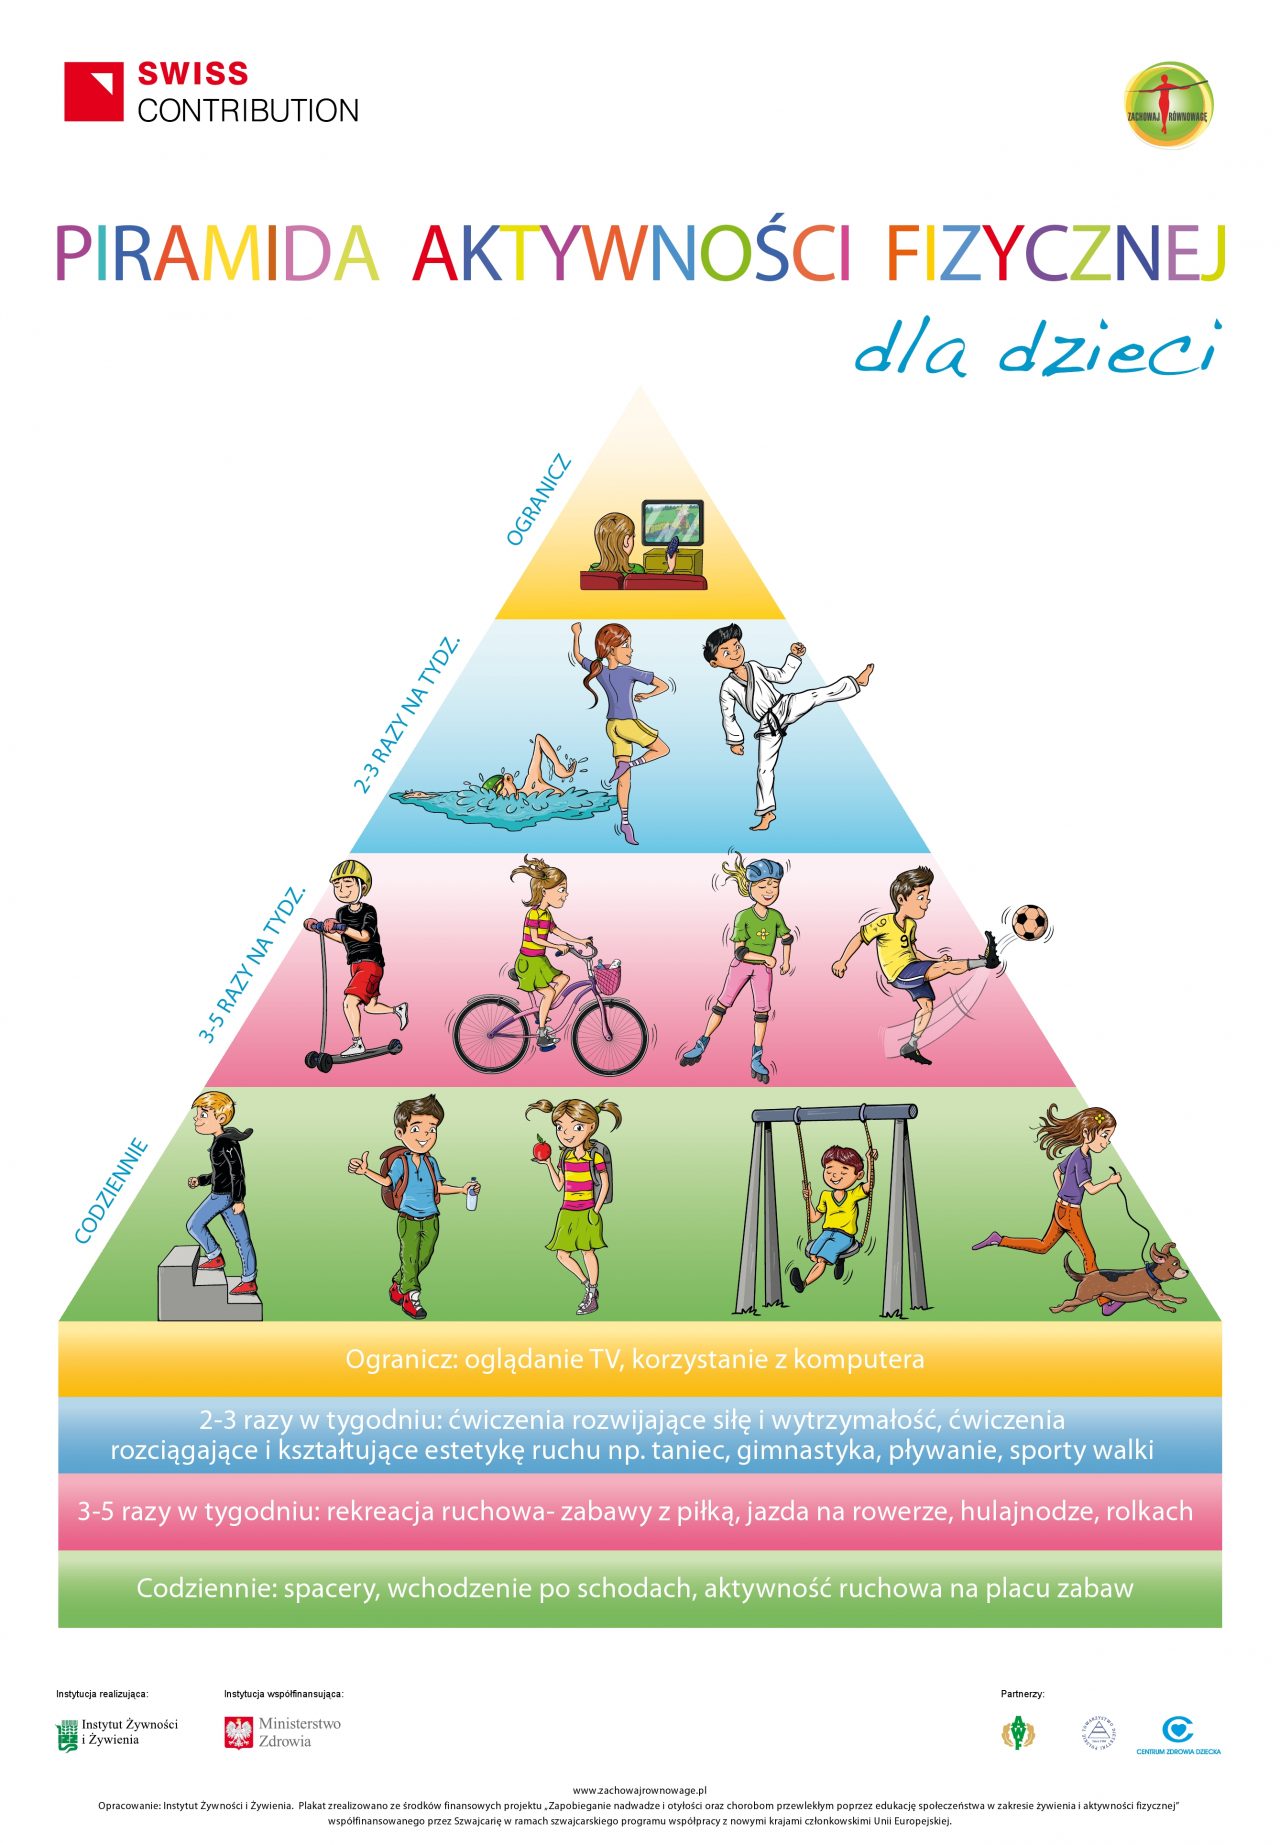 Piramida-Aktywnosci-Fizycznej-Dzieci-1280x1845.jpg